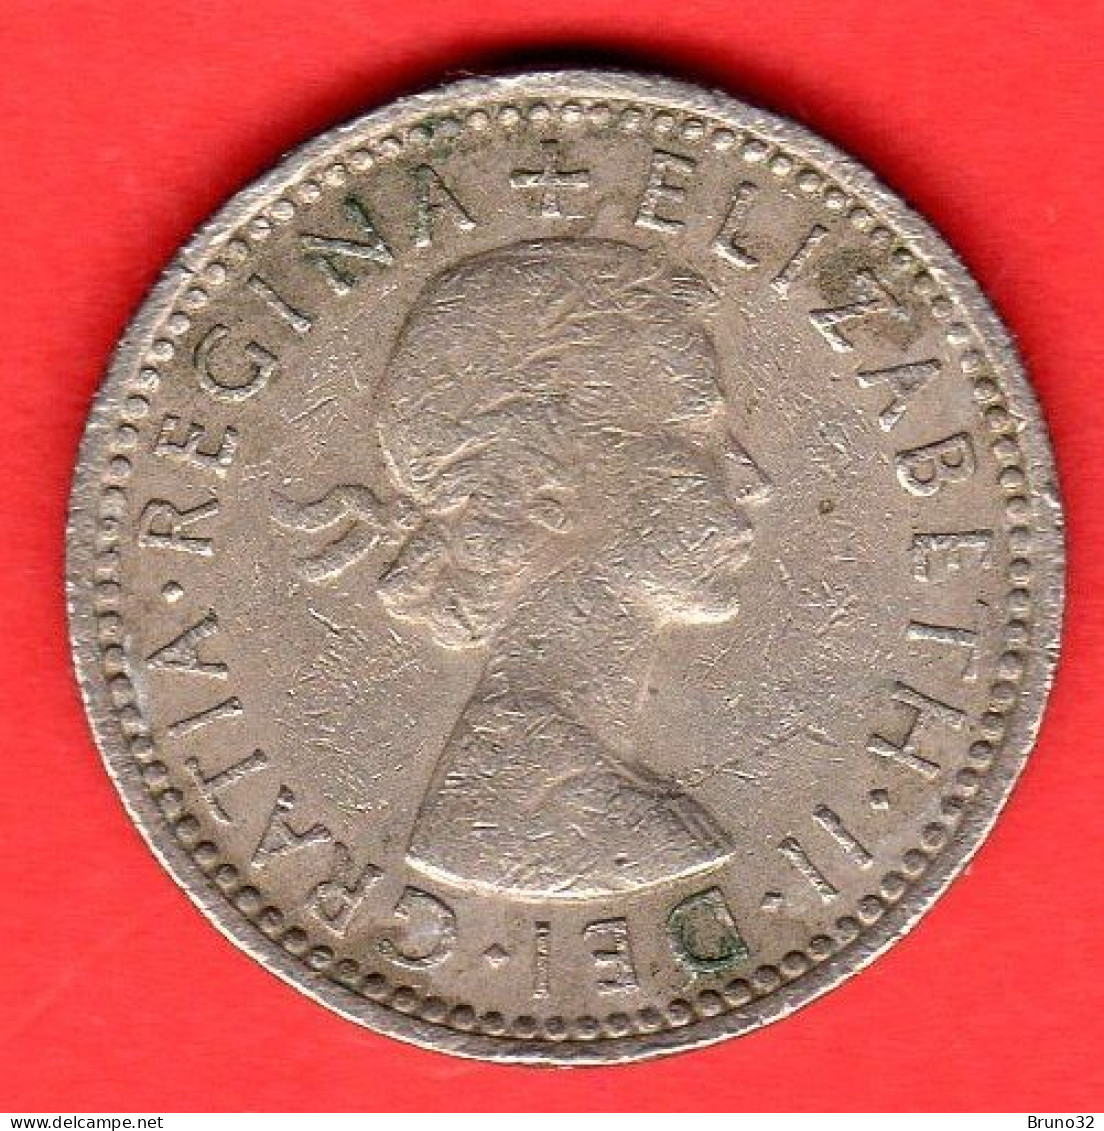 Gran Bretagna - Great Britain - GB - 6 Pence - 1958 - BB/VF - Come Da Foto - H. 6 Pence